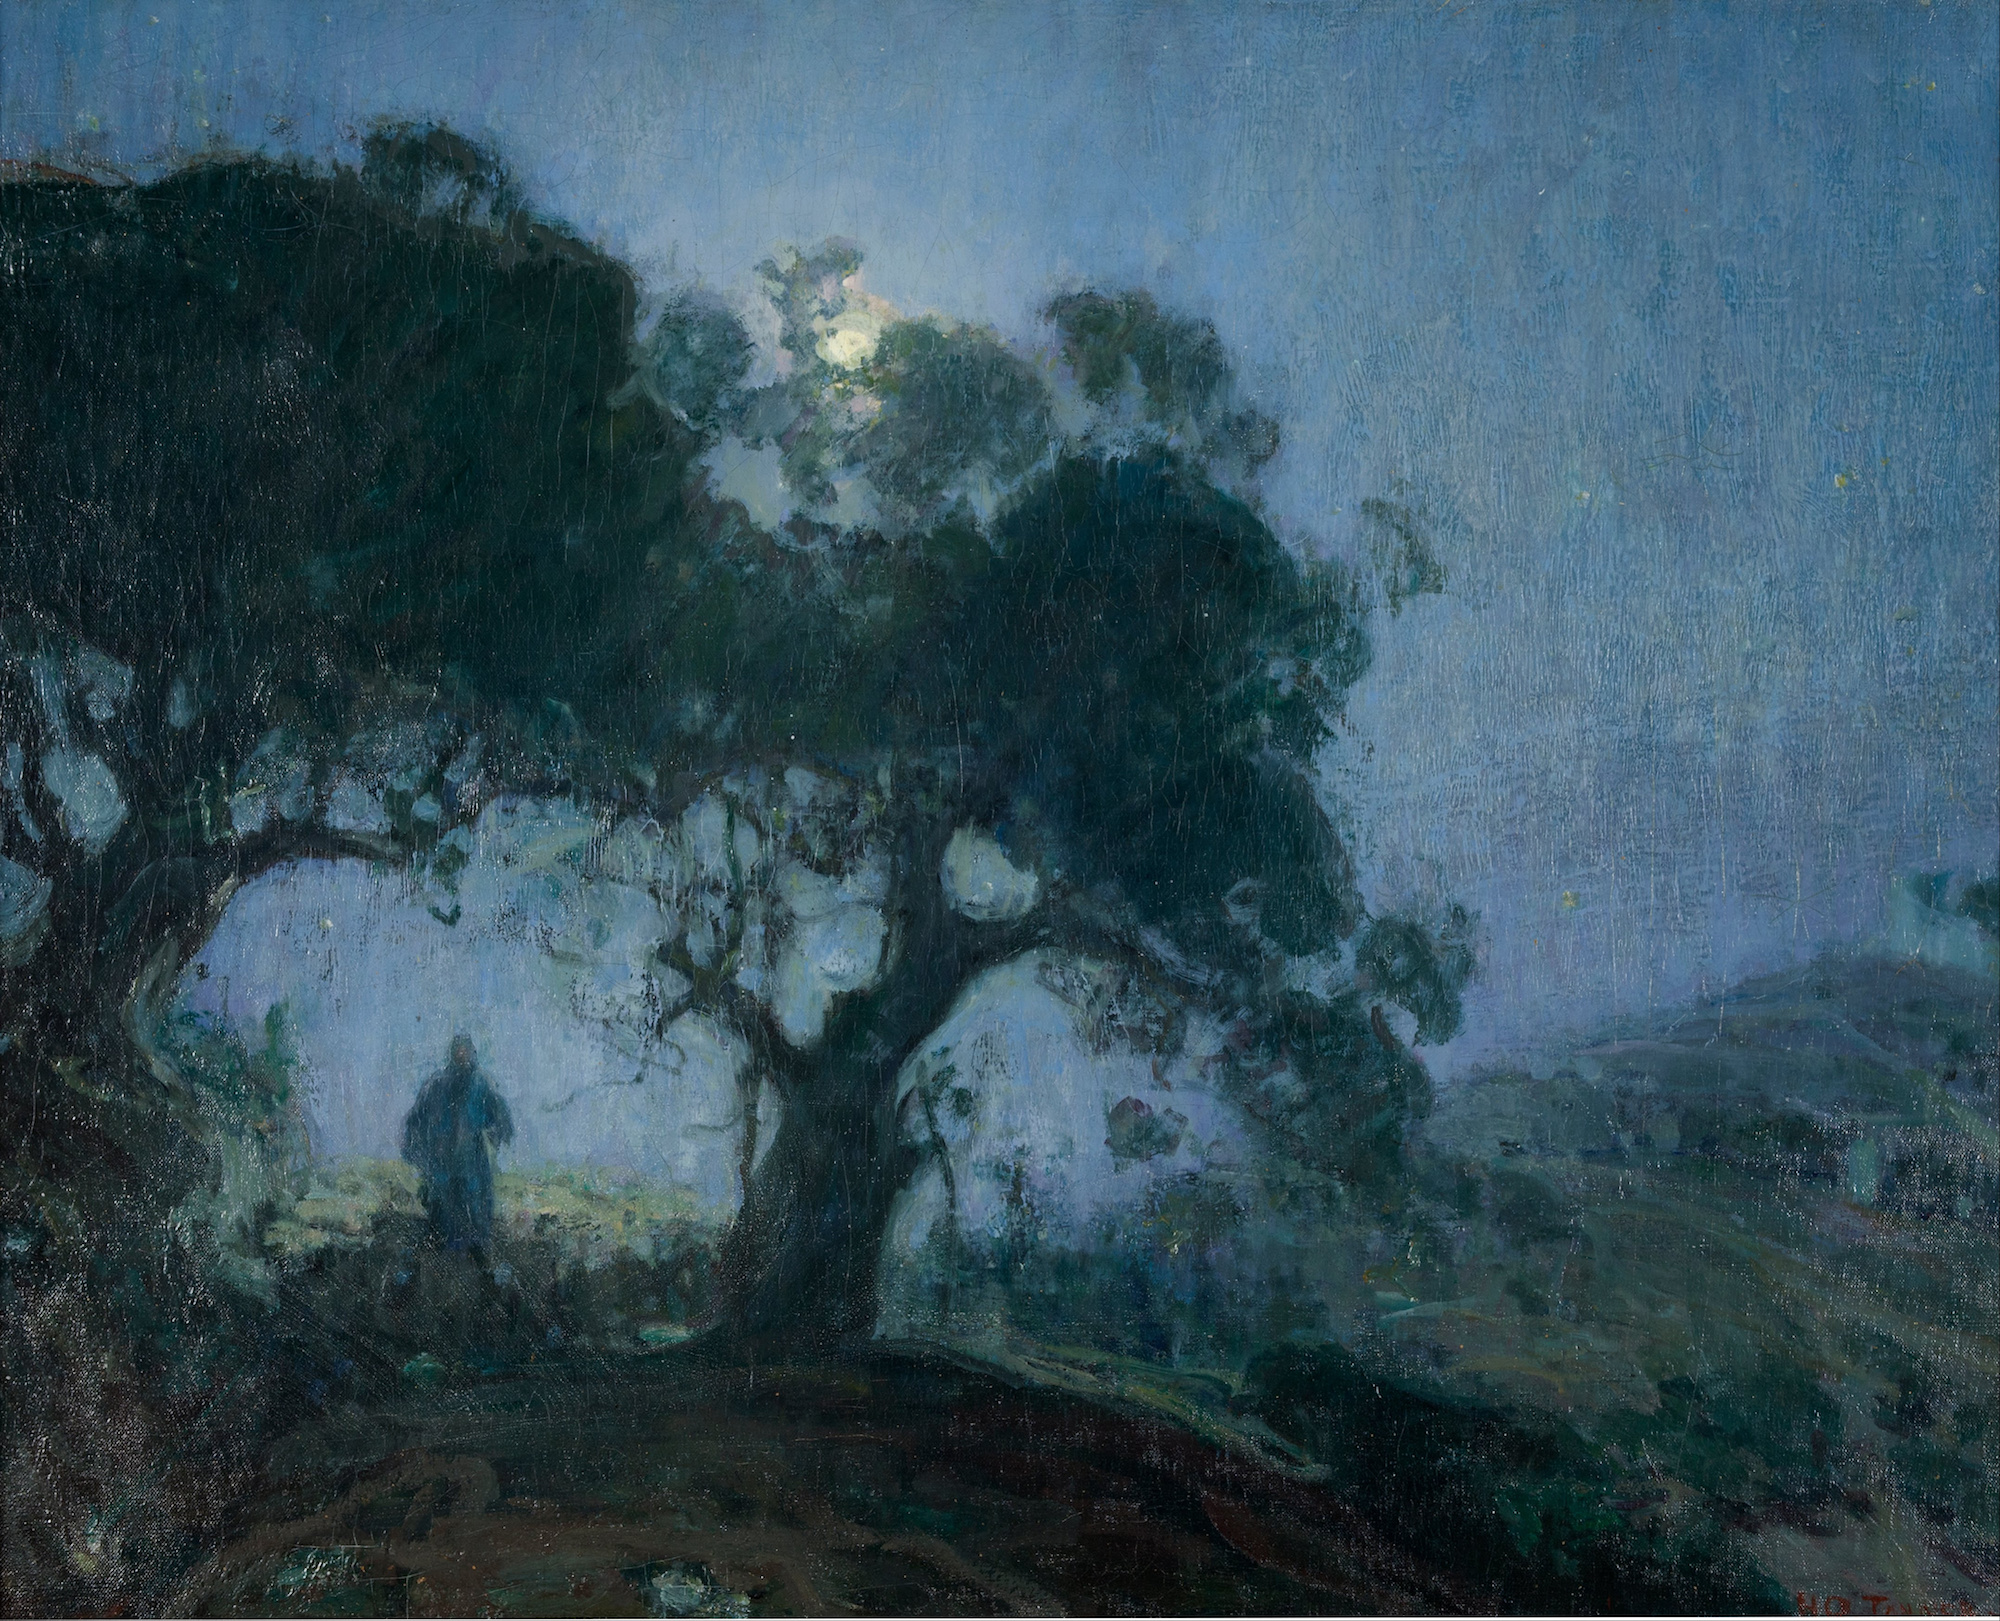 Păstorul Bun by Henry Ossawa Tanner - 1902/1903 - 189 x 169 cm 